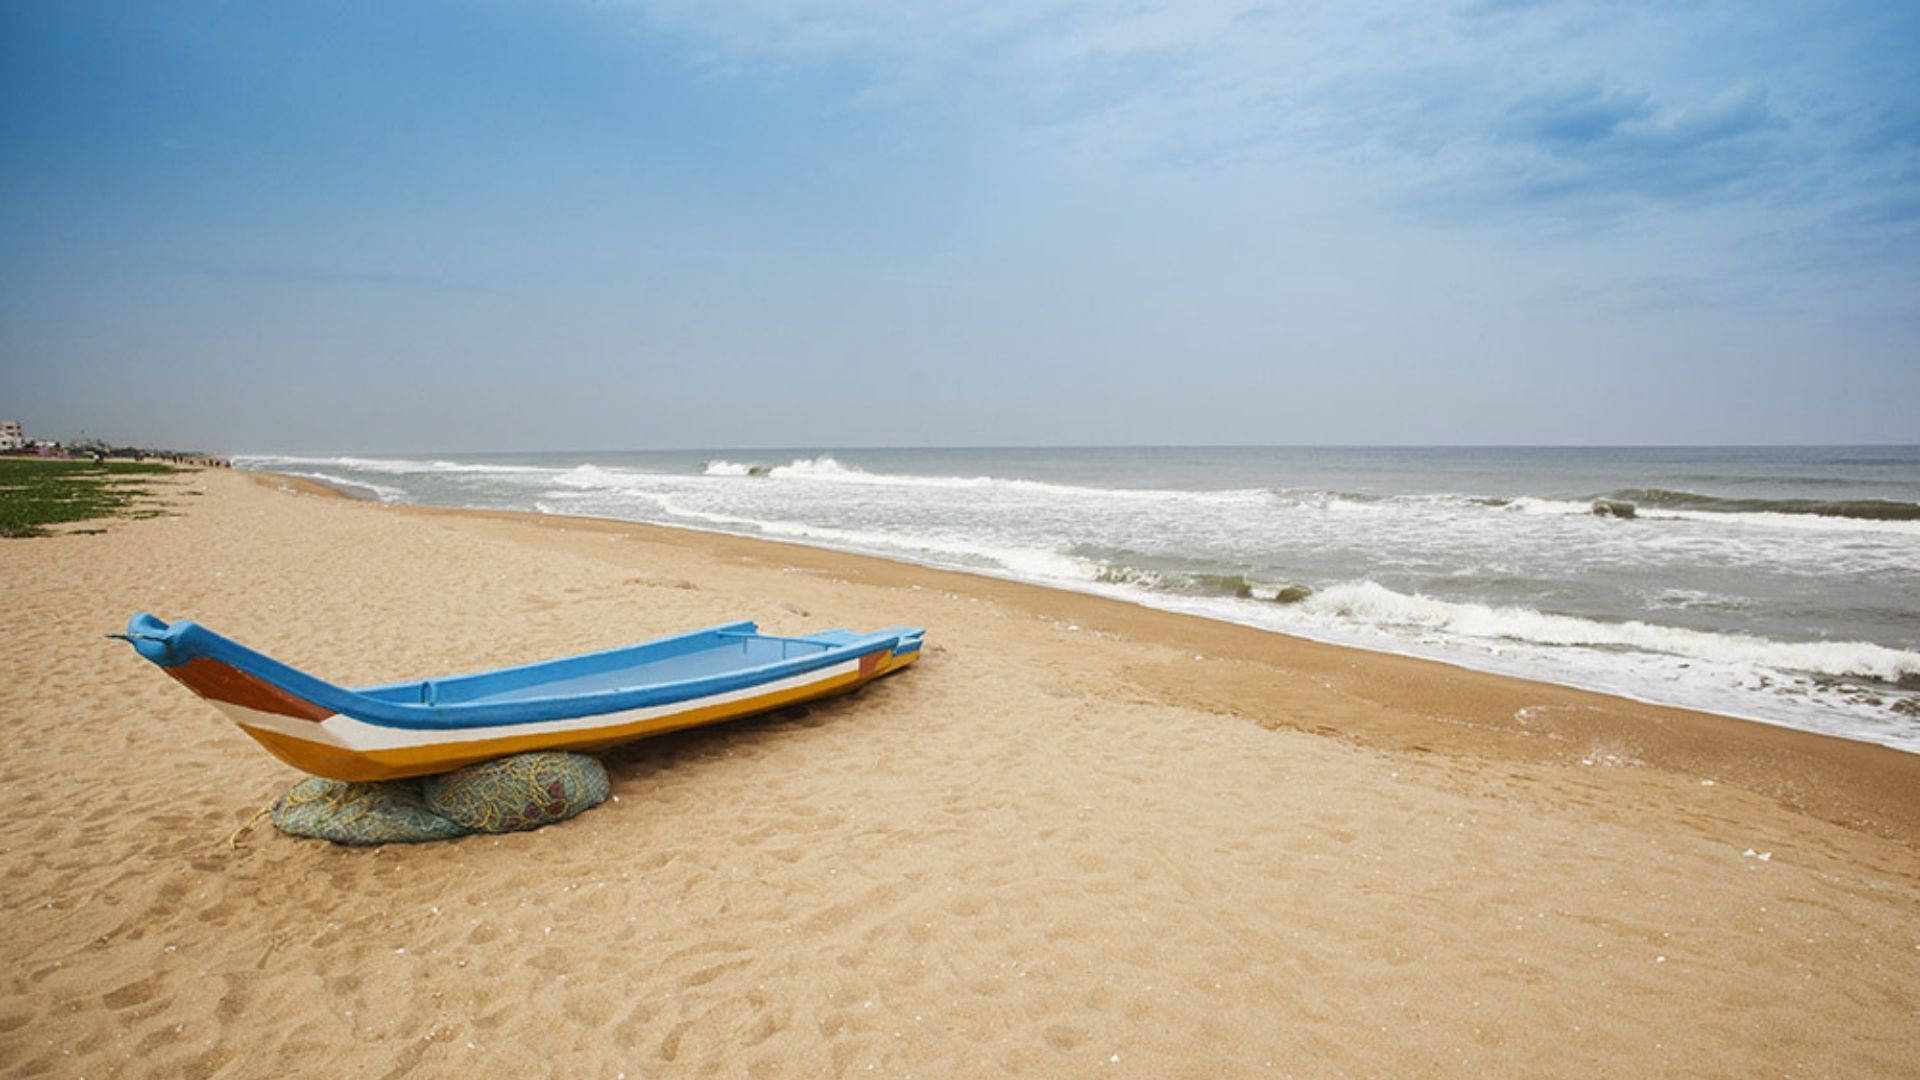 Beaches in Chennai